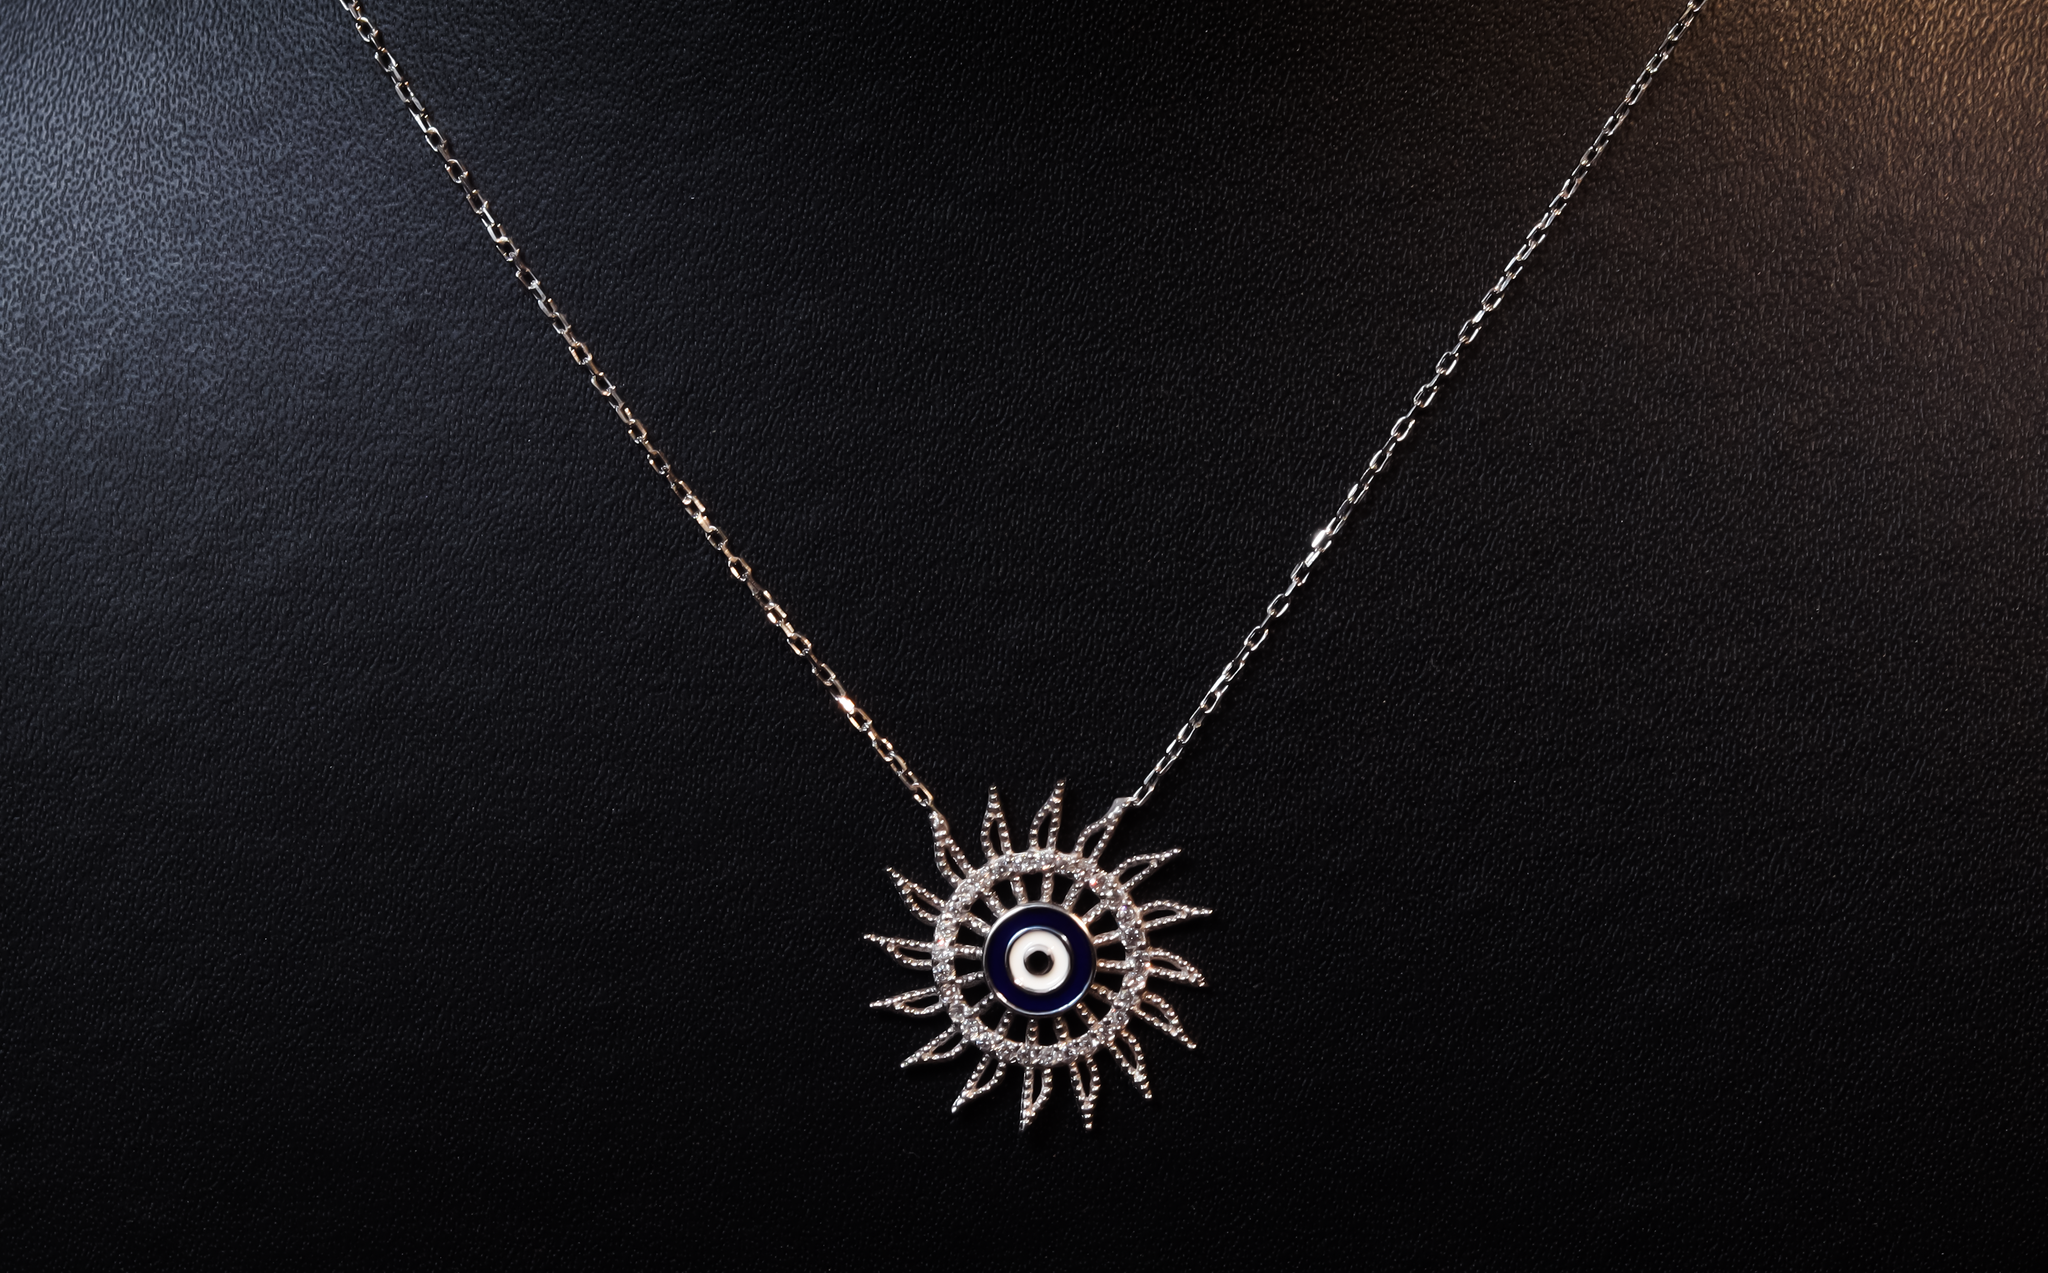 Evil eye sun necklace